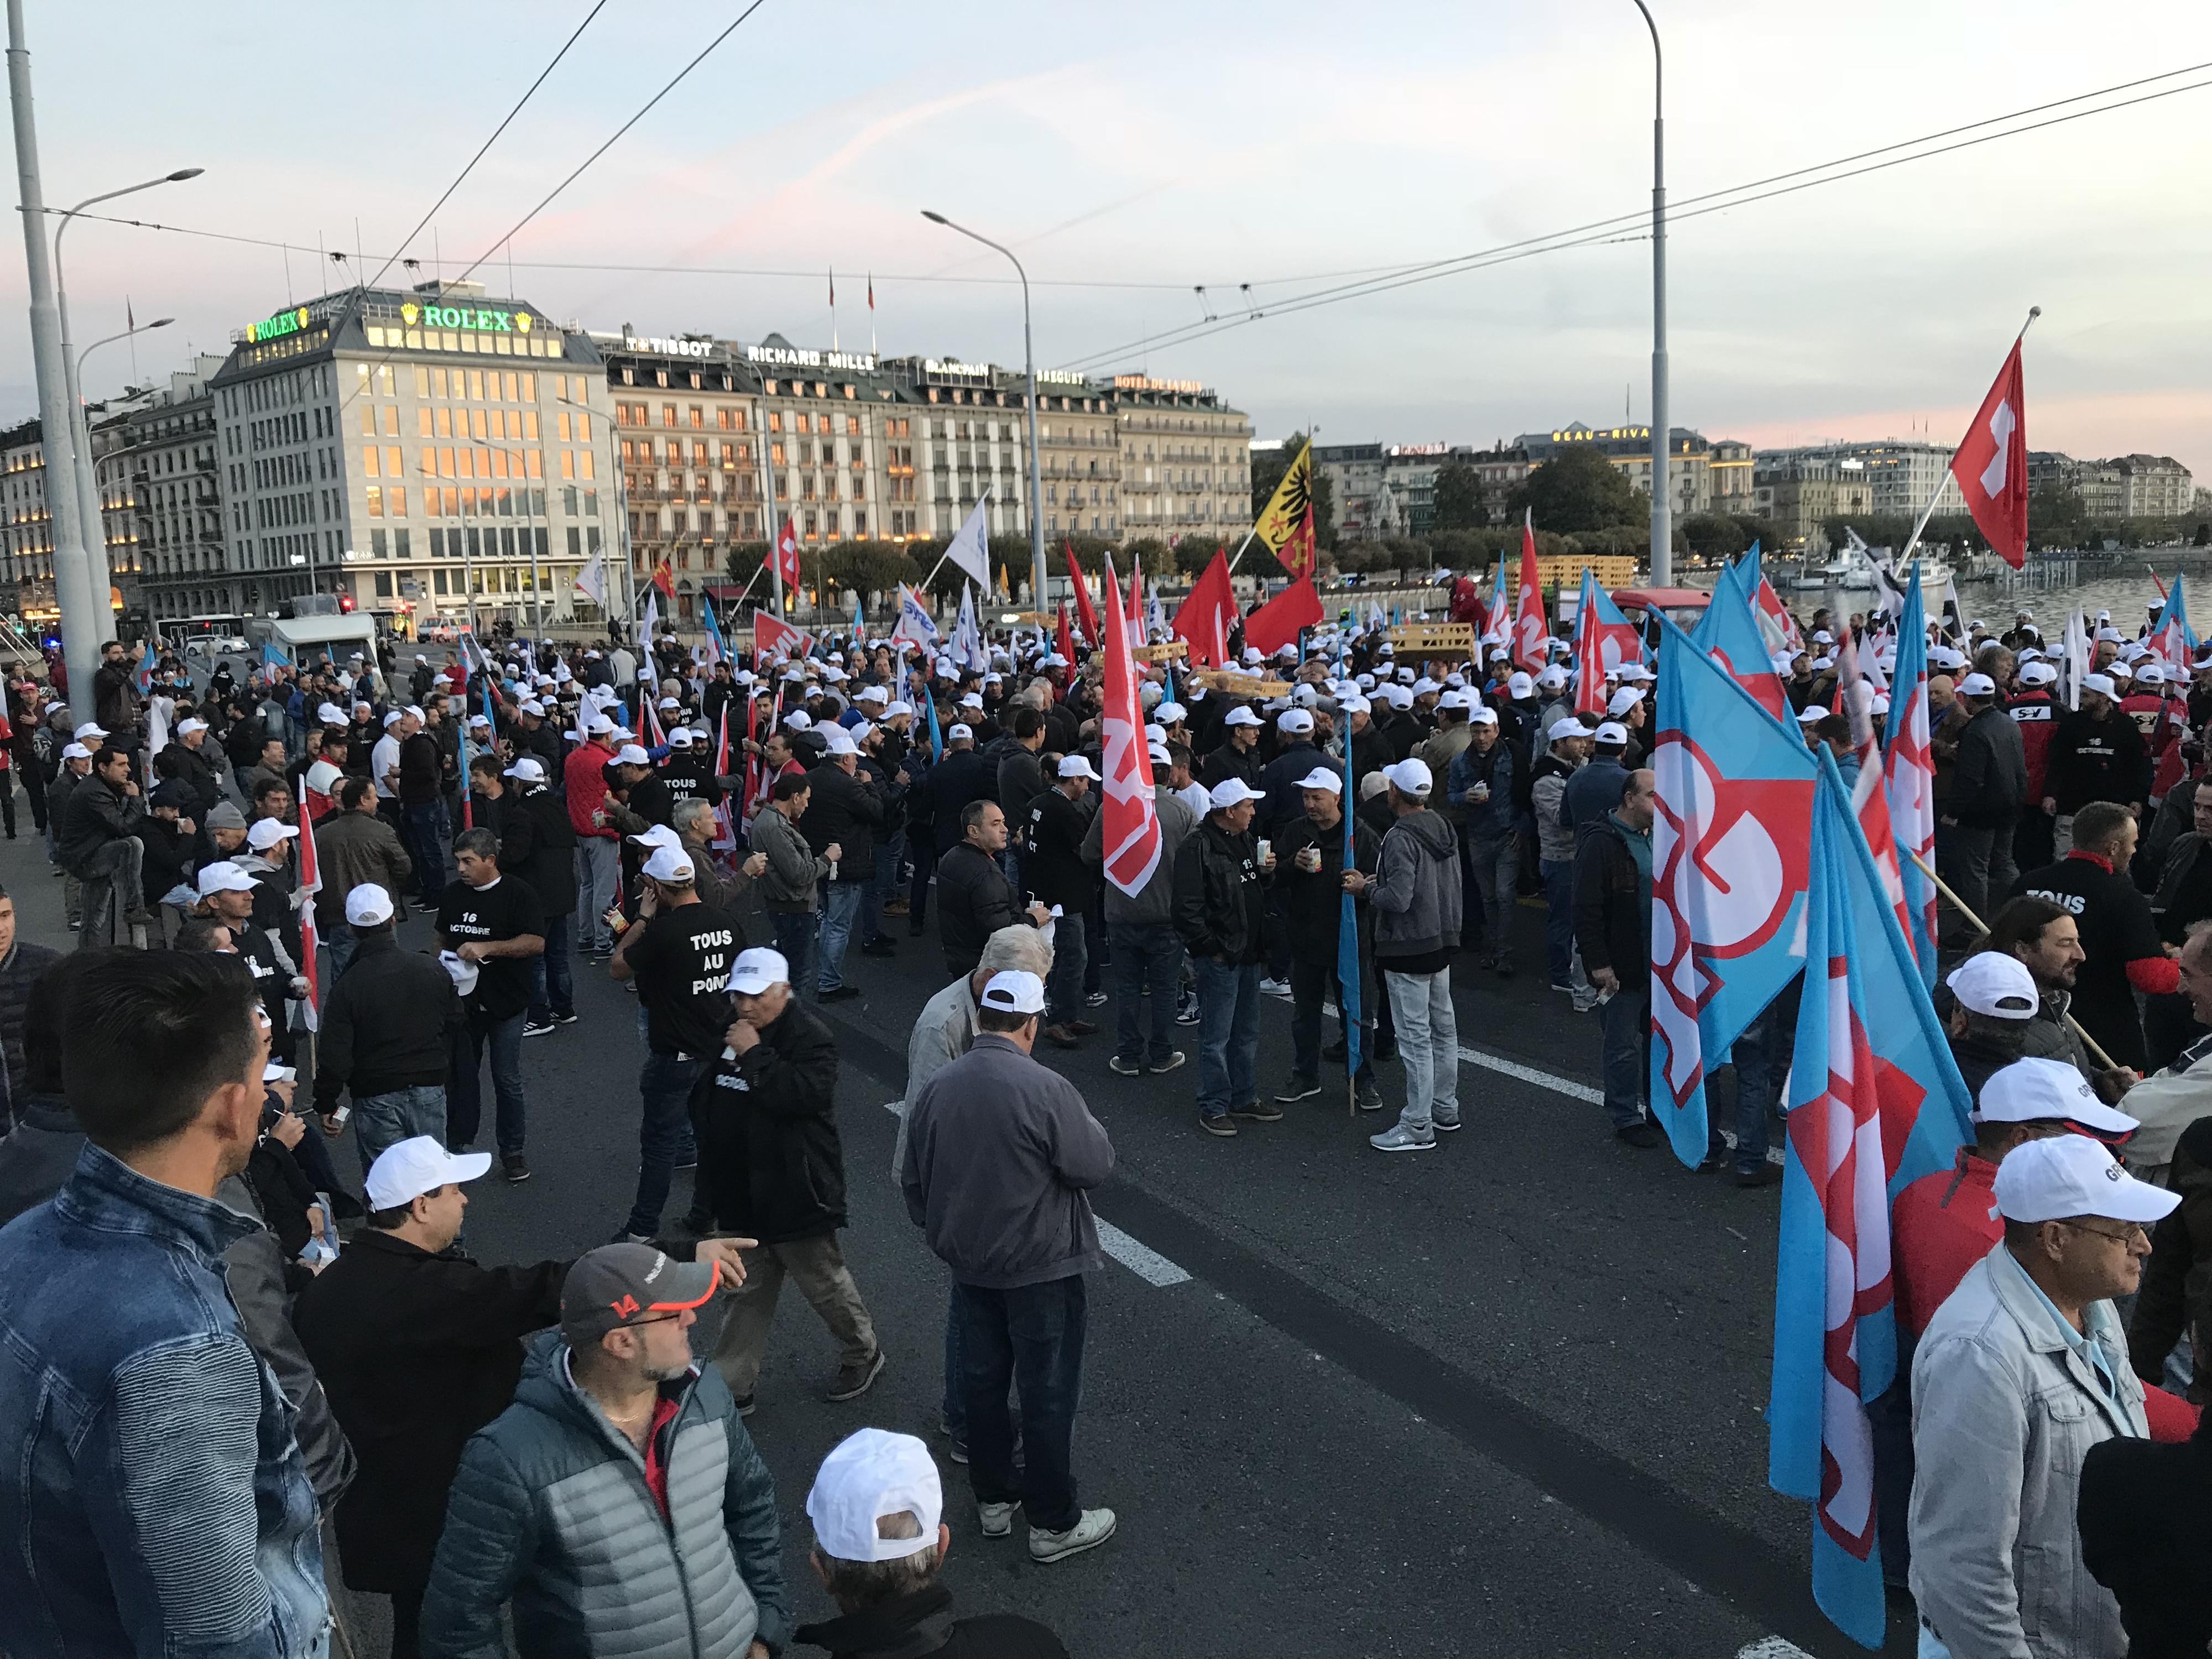 Les maçons font la grève sur le Pont du Mont-Blanc à Genève, mardi 16 octobre 2018. [RTS - Joël Boissard]